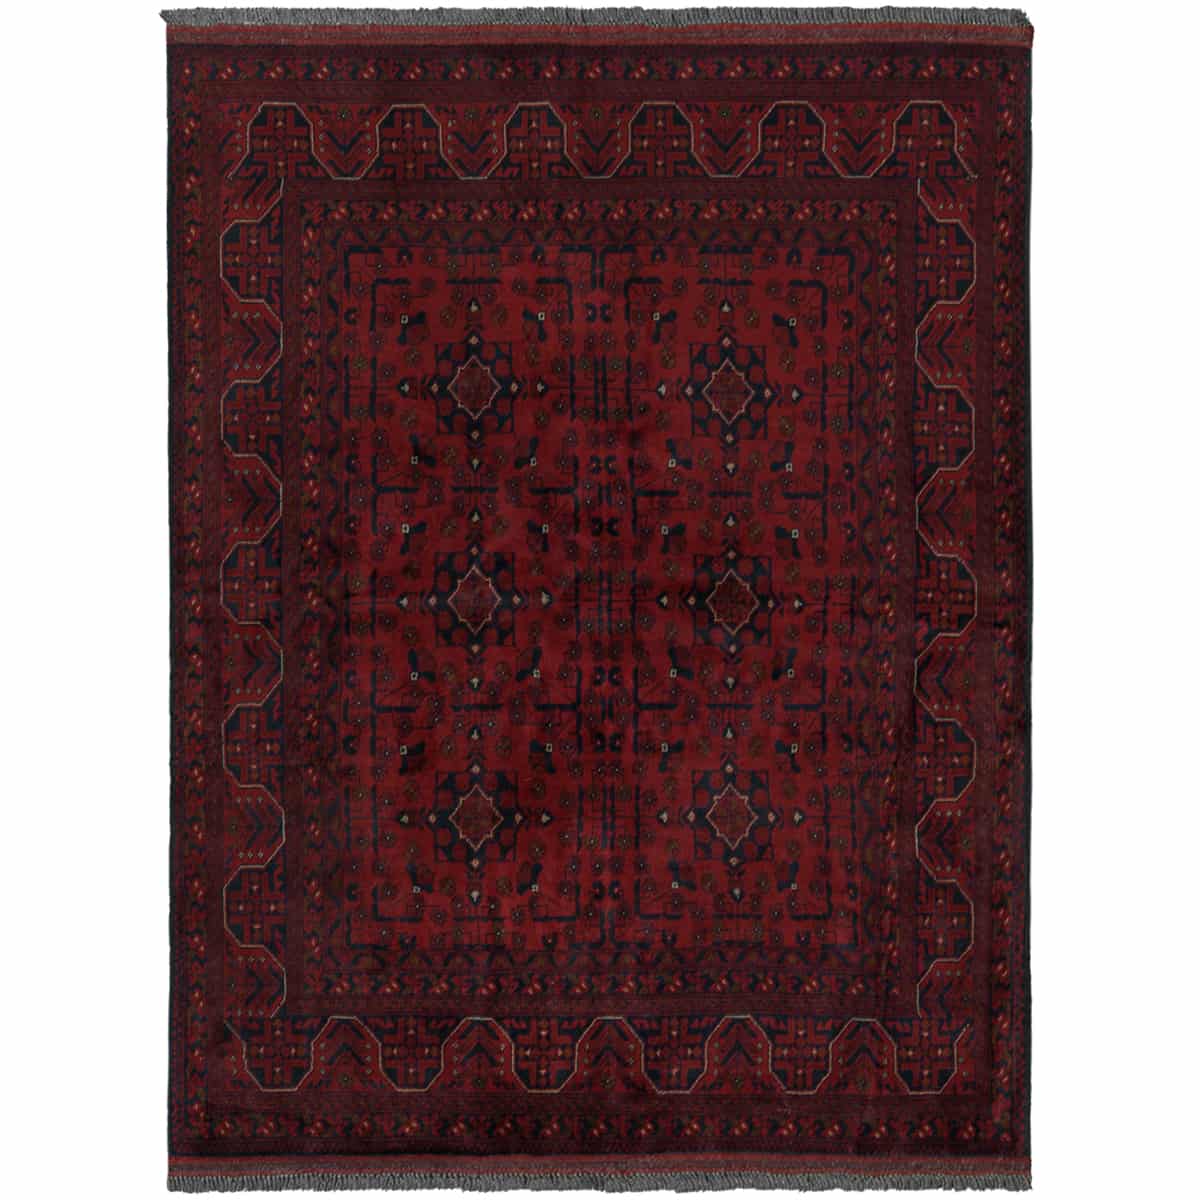 שטיח סופר חל ממדי בלג'יק 00 אדום 195*152